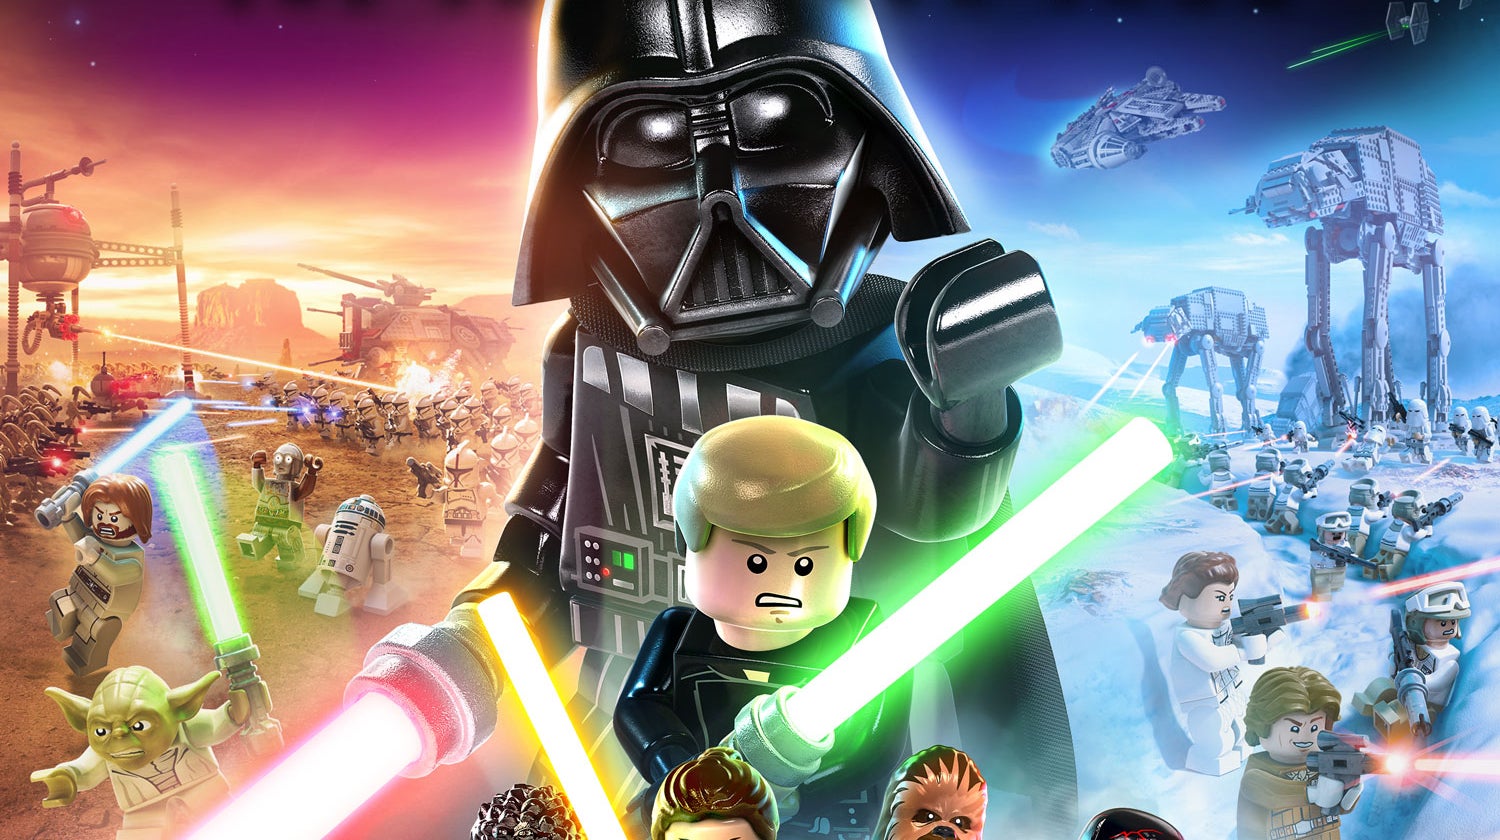 Immagine di LEGO Star Wars: La Saga degli Skywalker - I mattoncini stellari si sono evoluti